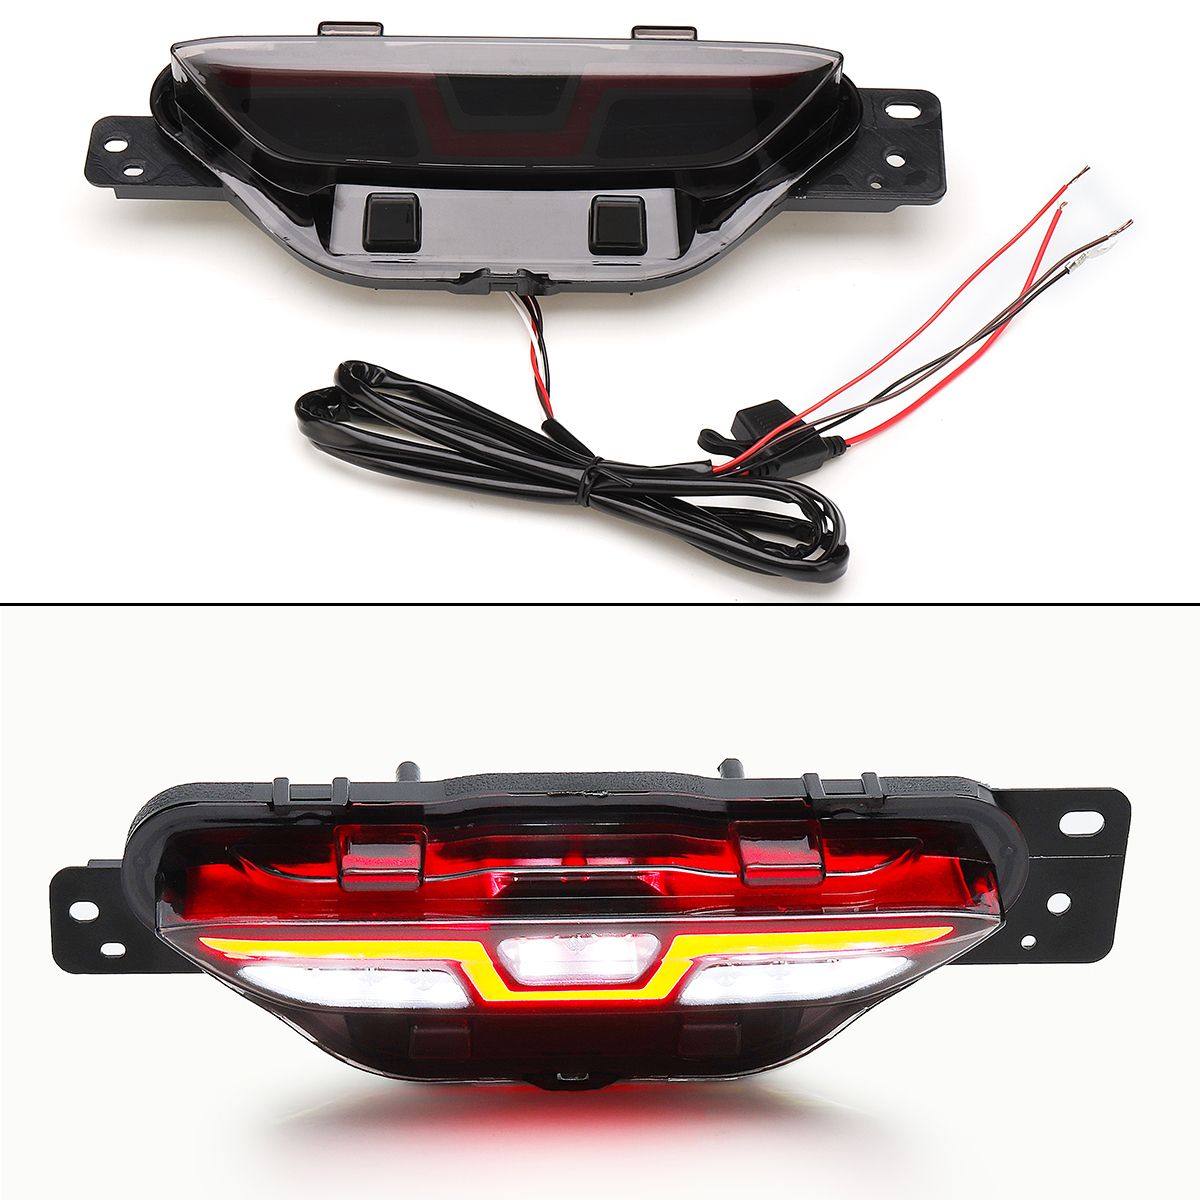 LED-Car-Rear-Fog-Lights-Brake-Tail-Backup-Lamp-for-Toyota-C-HR-CHR-2016-18-1345525